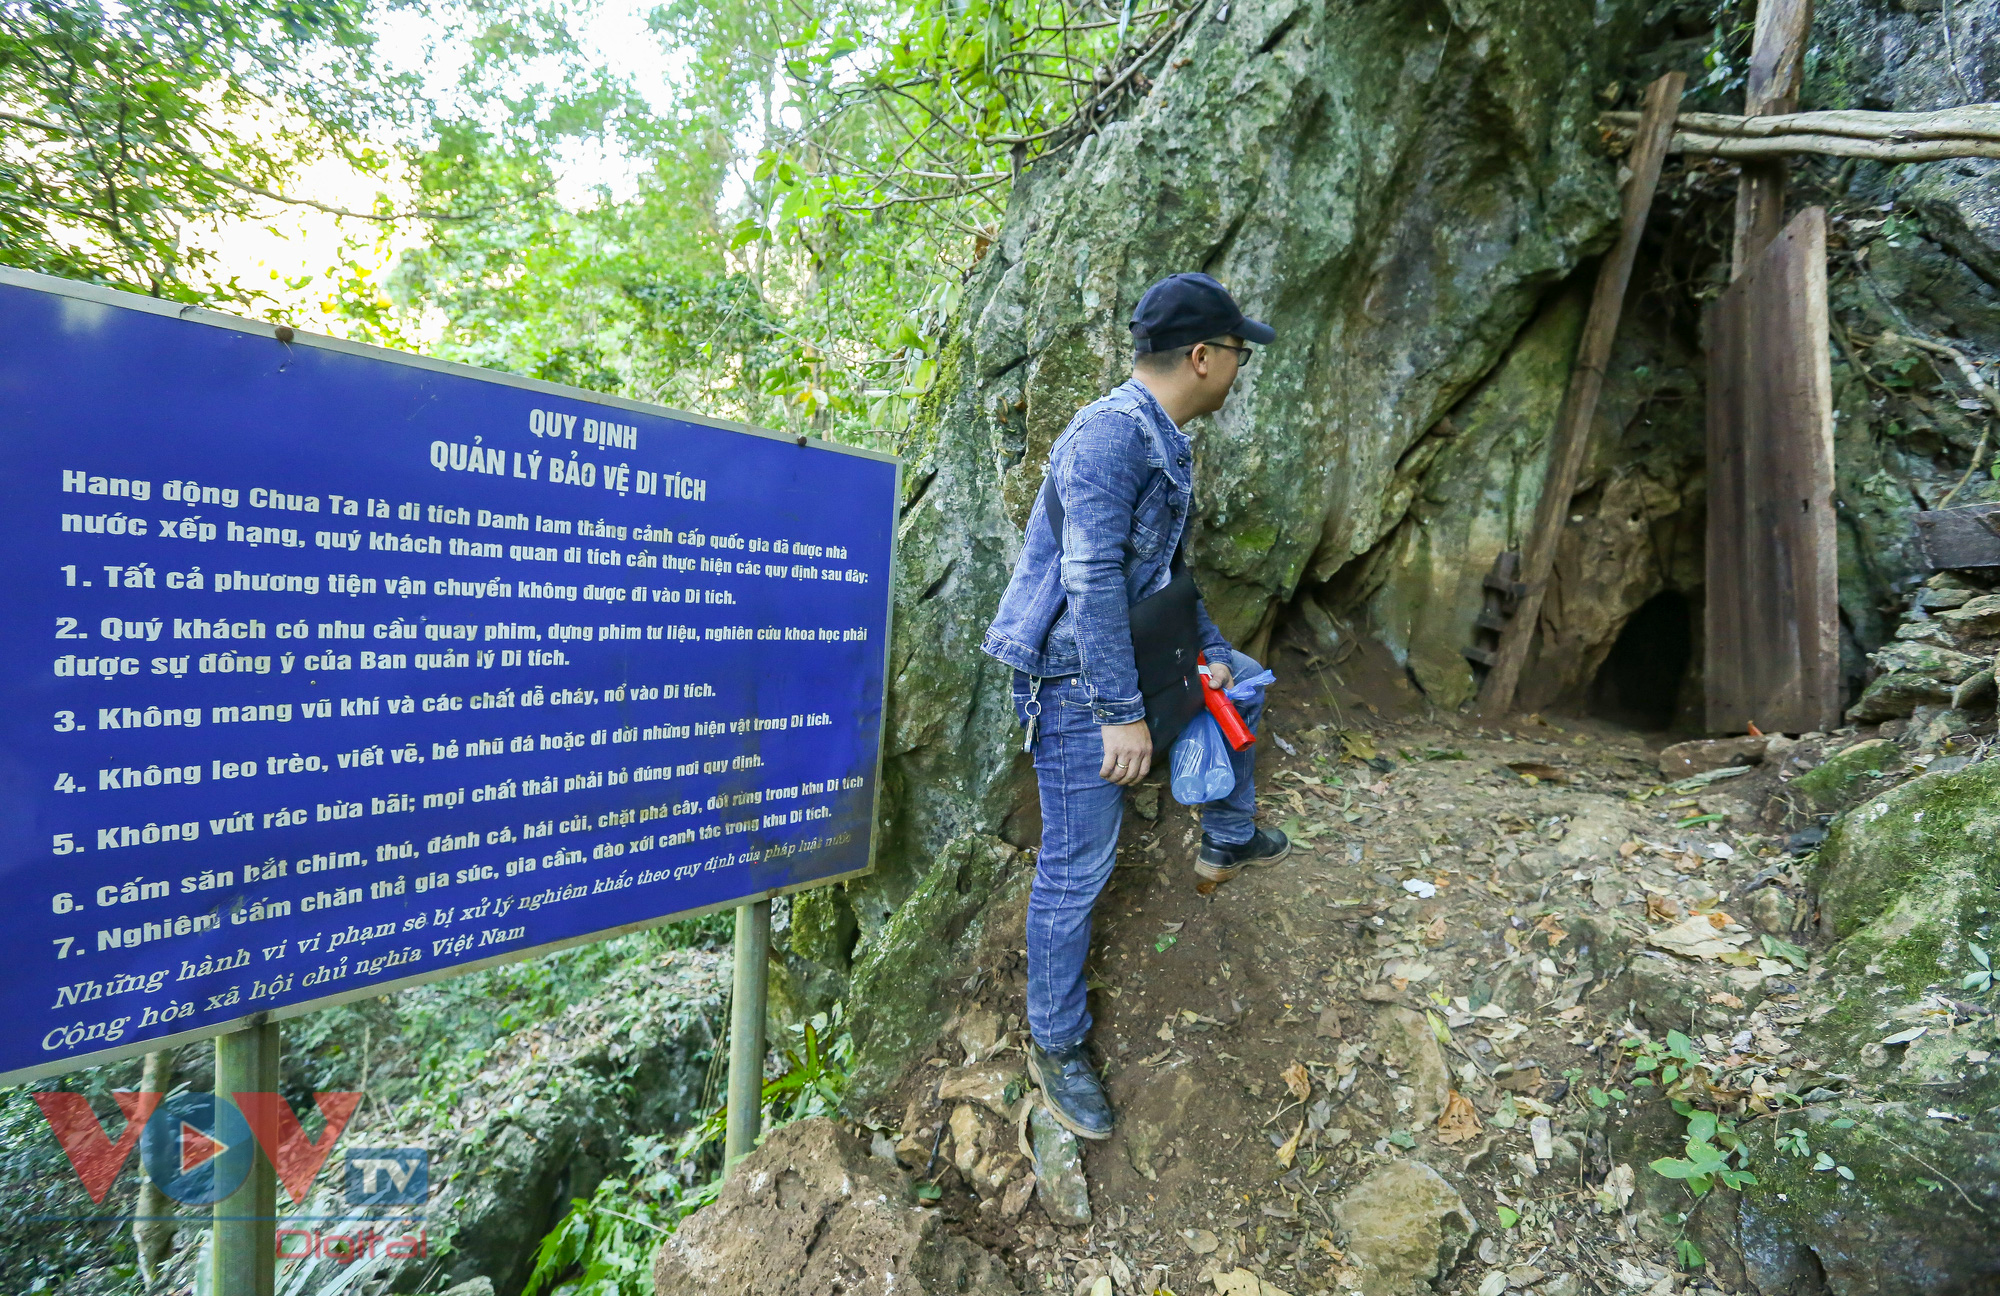 Khám phá vẻ đẹp hang động Chua Ta ở Điện Biên - Ảnh 5.